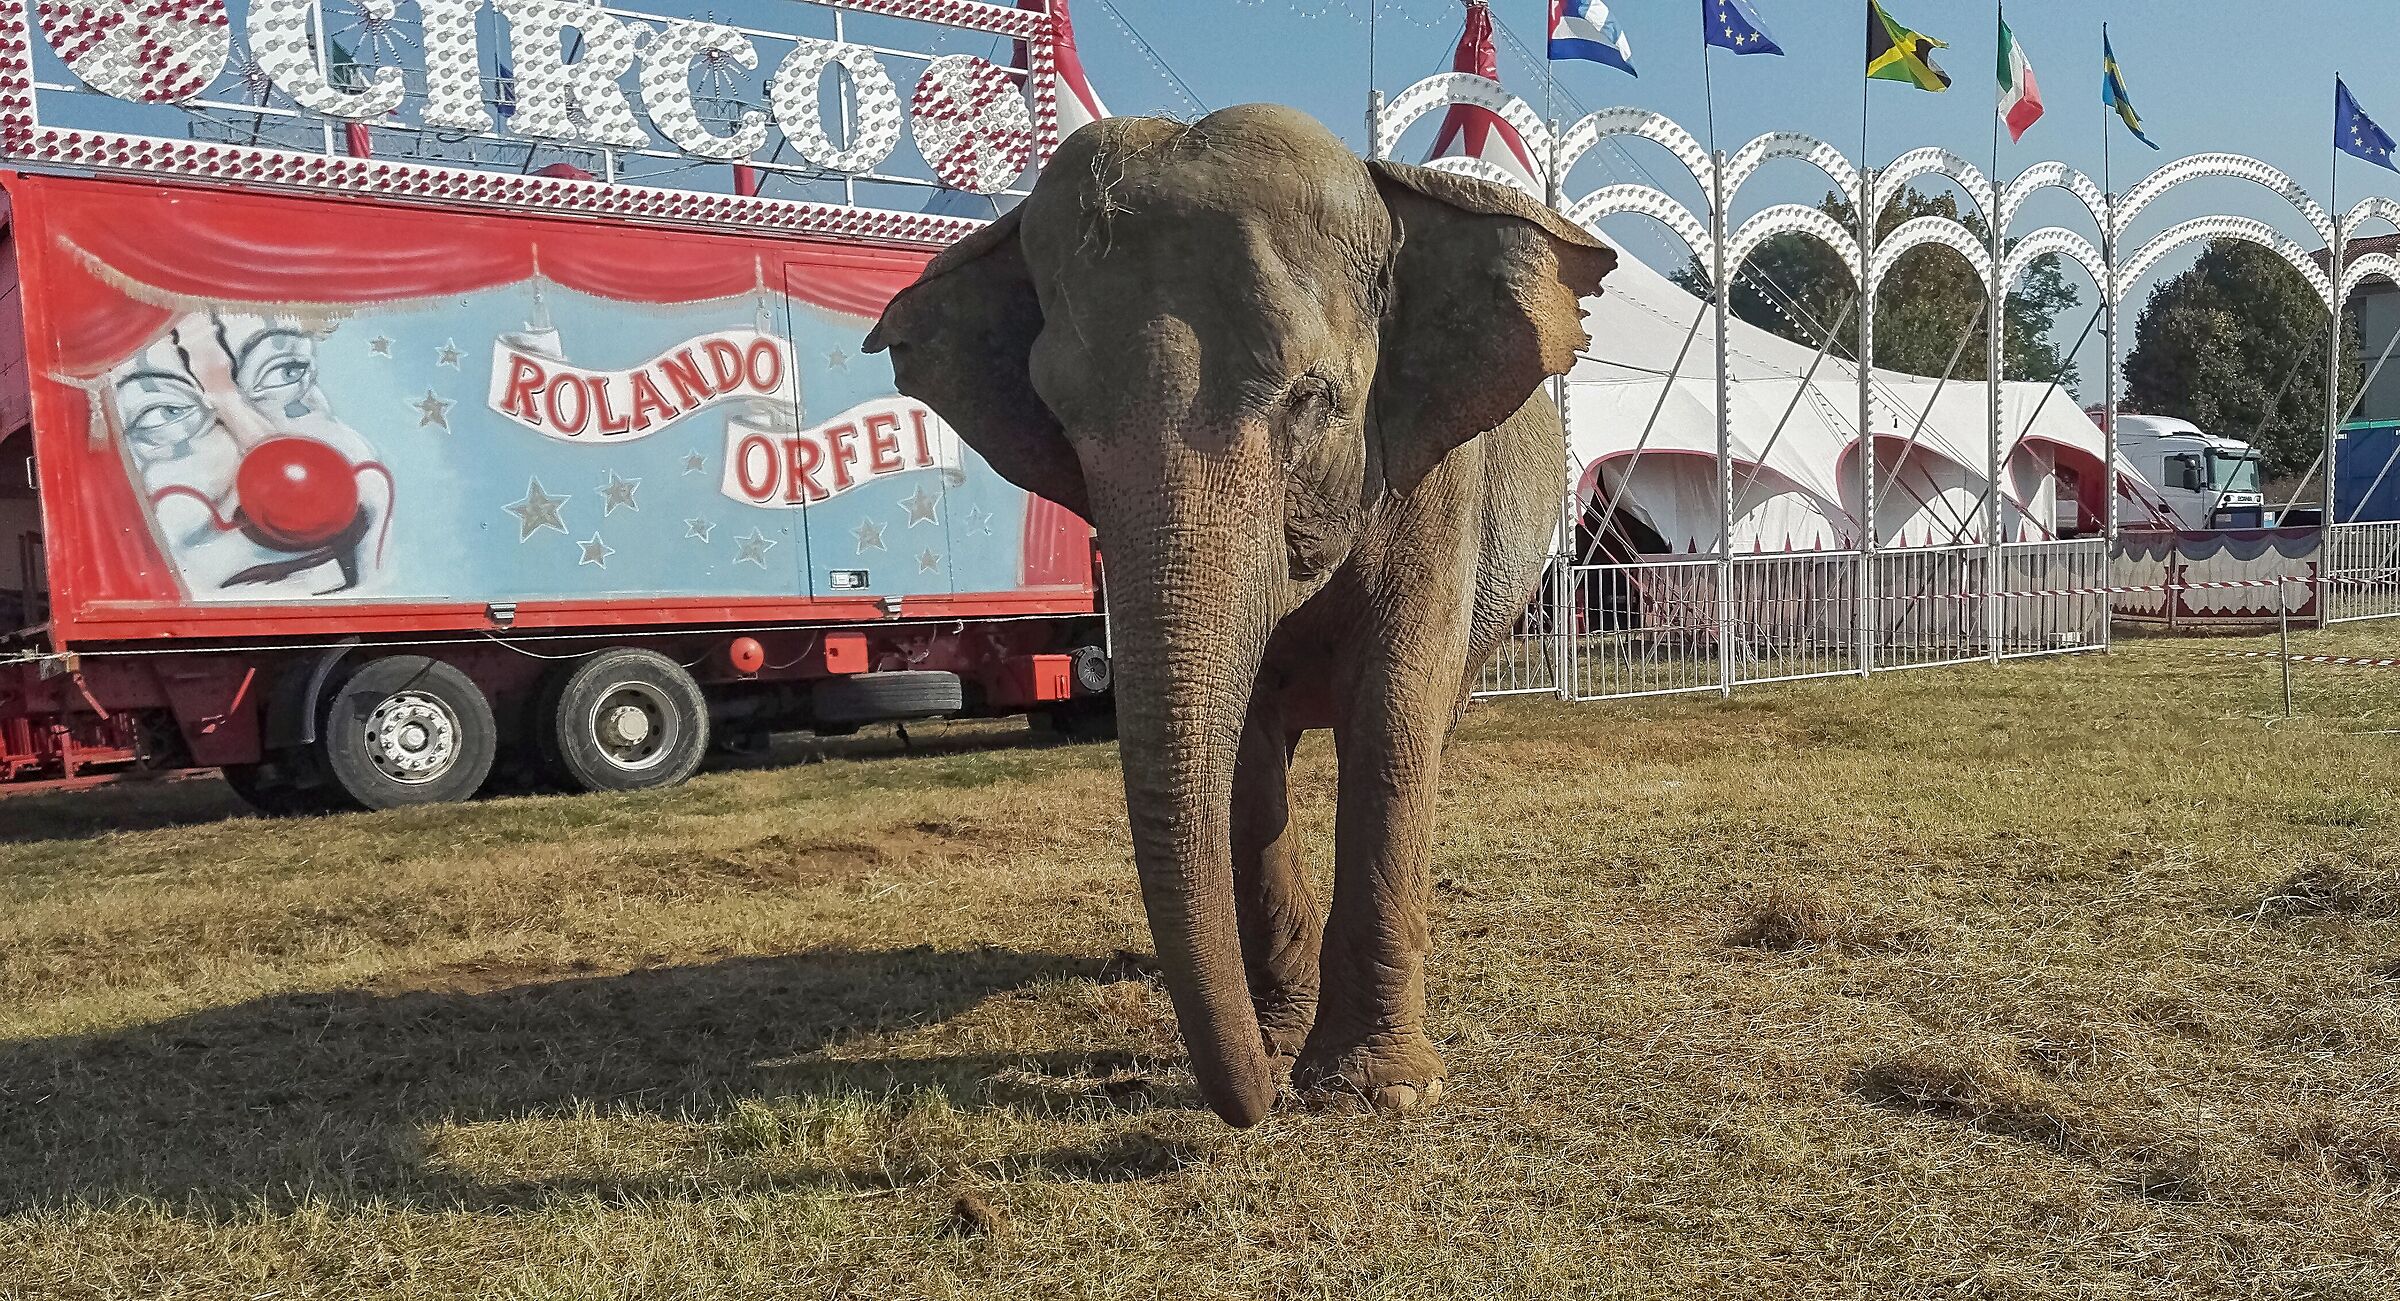 elefante circo orlando orfei fatta con honor 7 4/10/18...